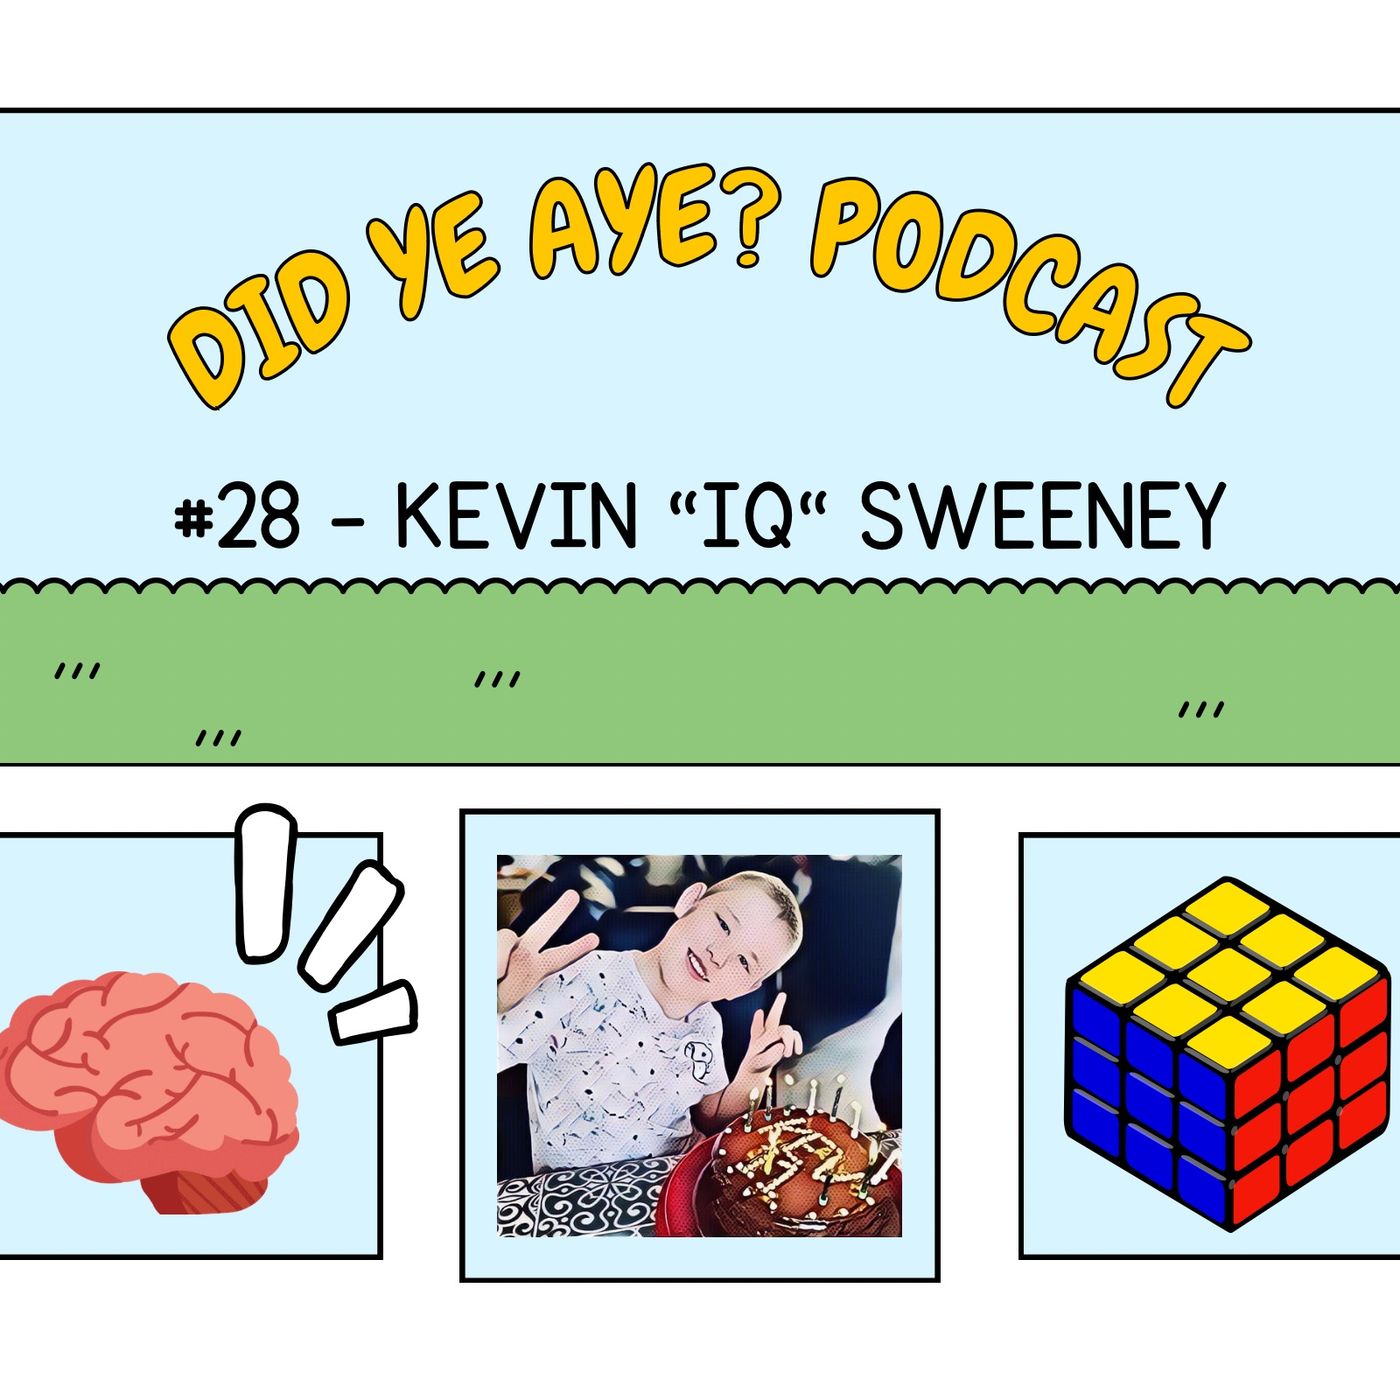 #28 - Kevin ”IQ” Sweeney